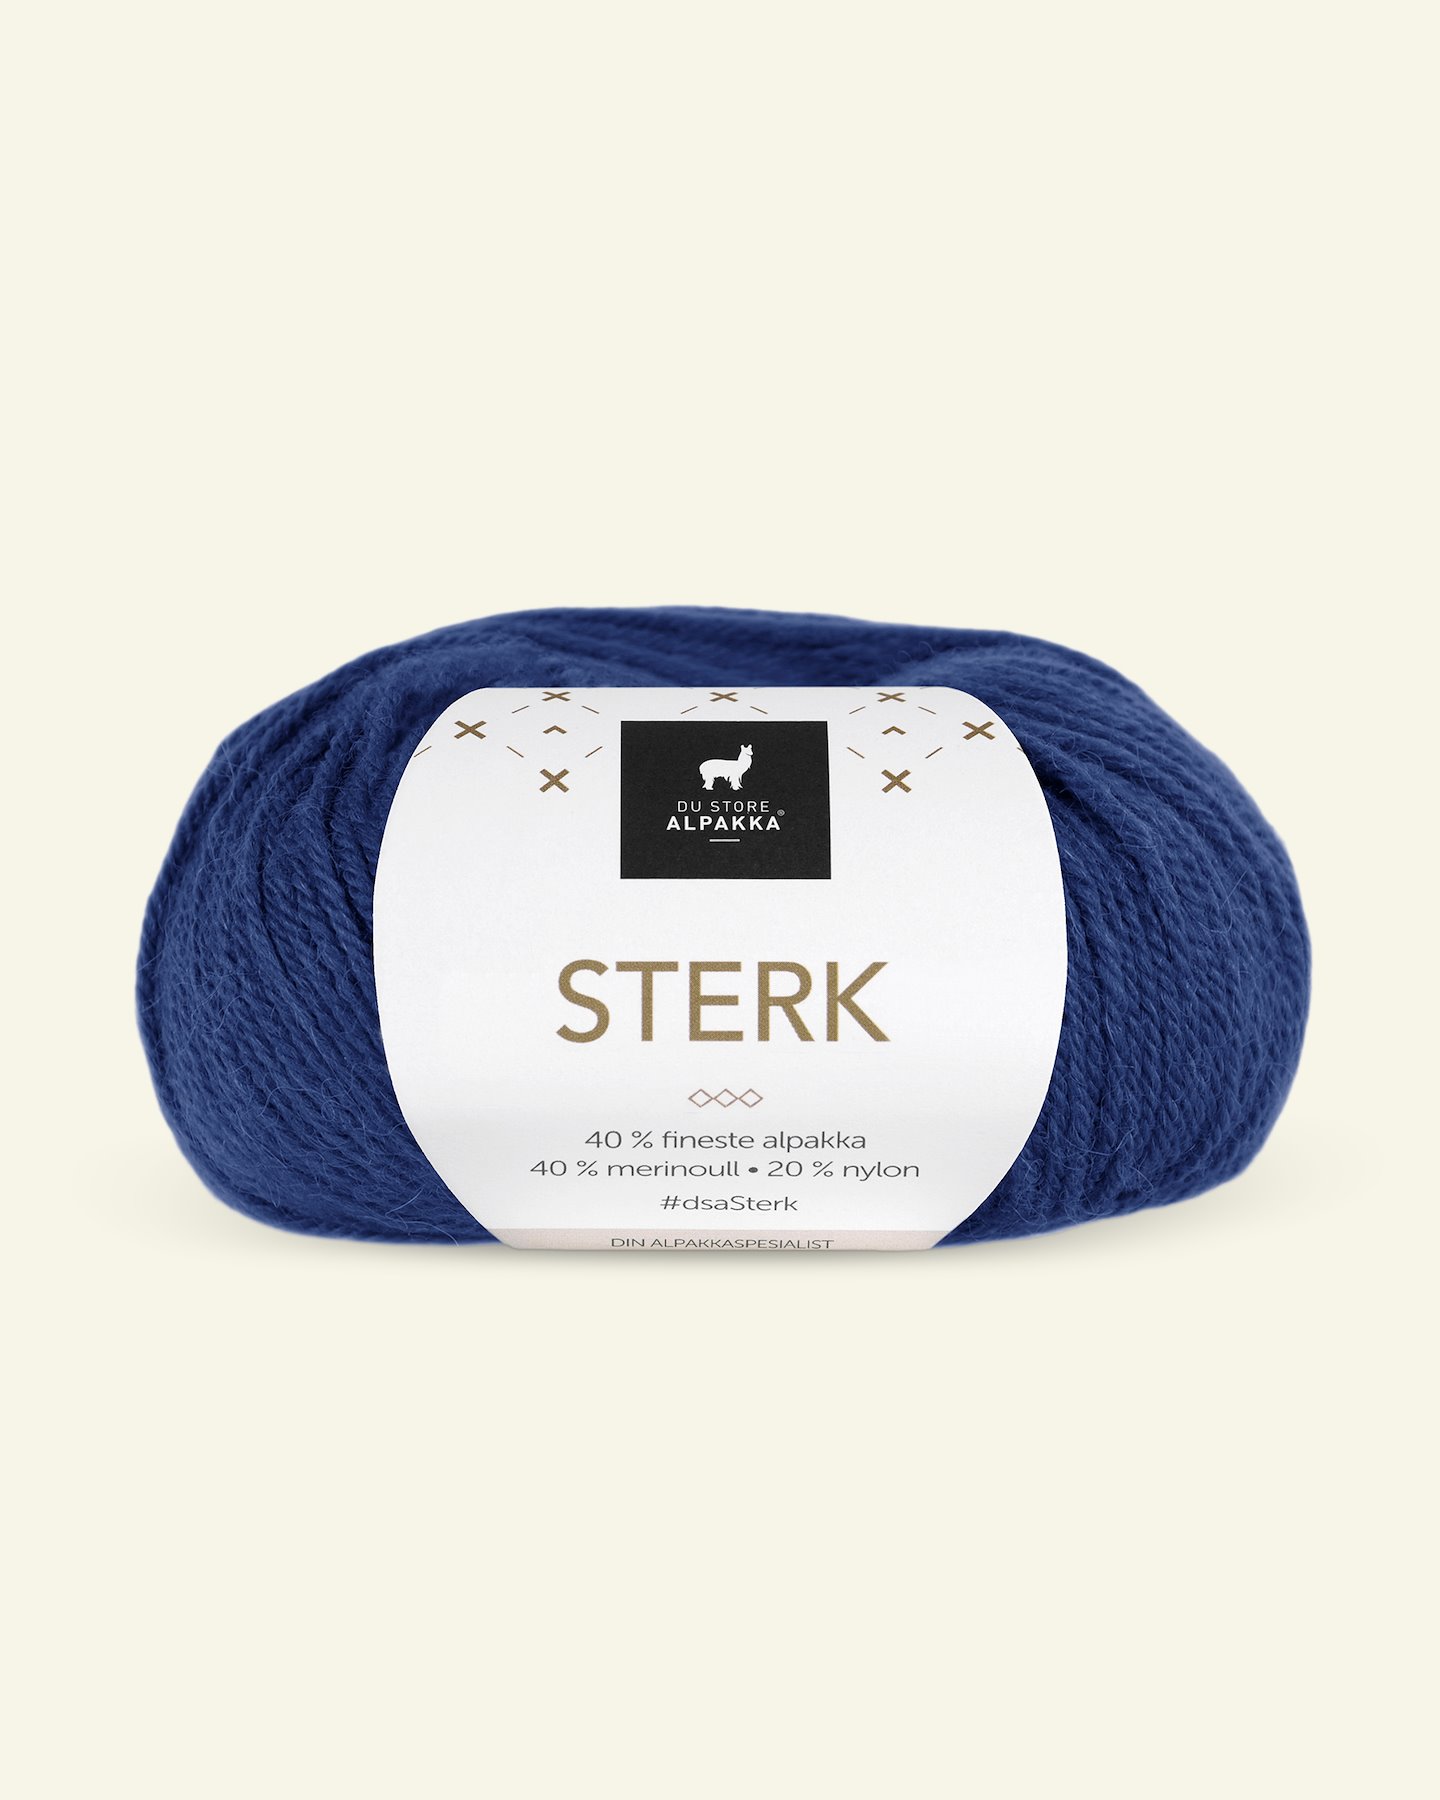 Du Store Alpakka, Alpaka merino Mischgarn "Sterk", blau (815) 90000661_pack